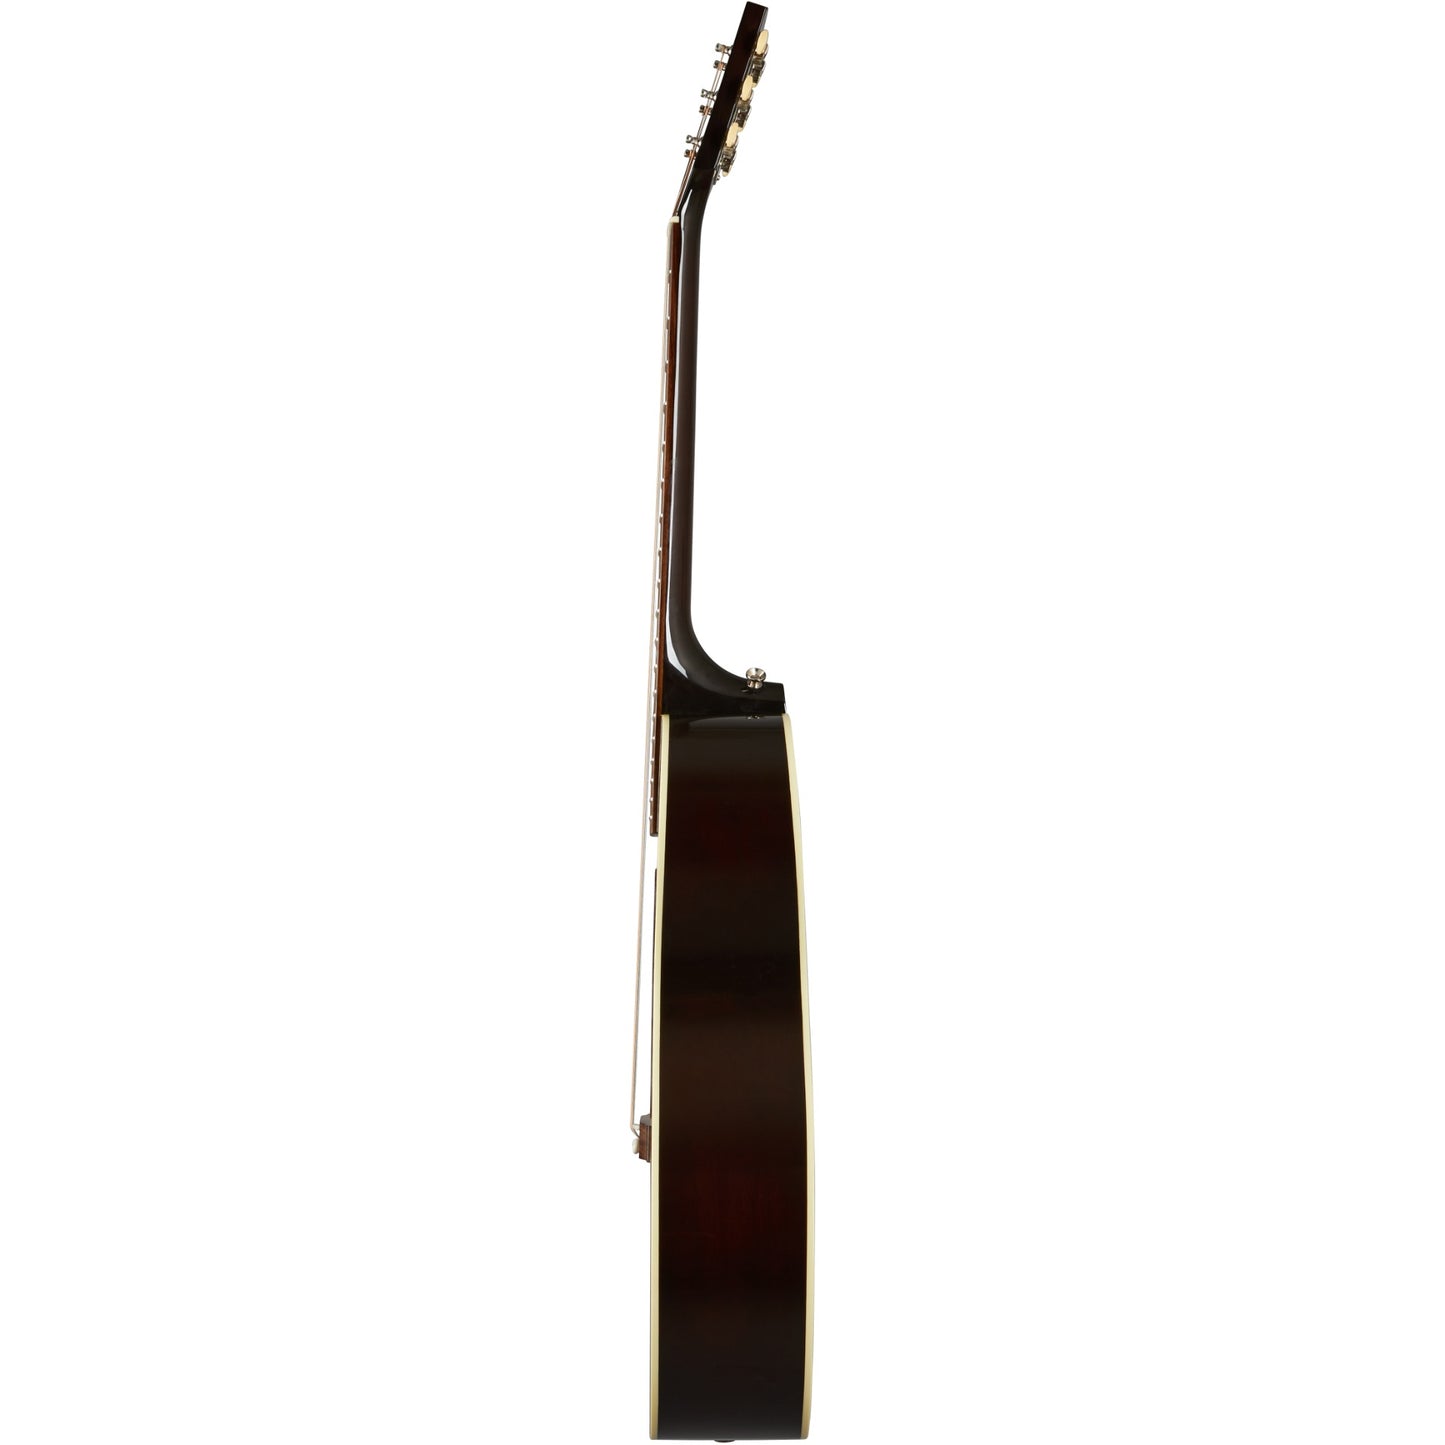 Gibson L-00 Original Acoustic Guitar - Vintage Sunburst